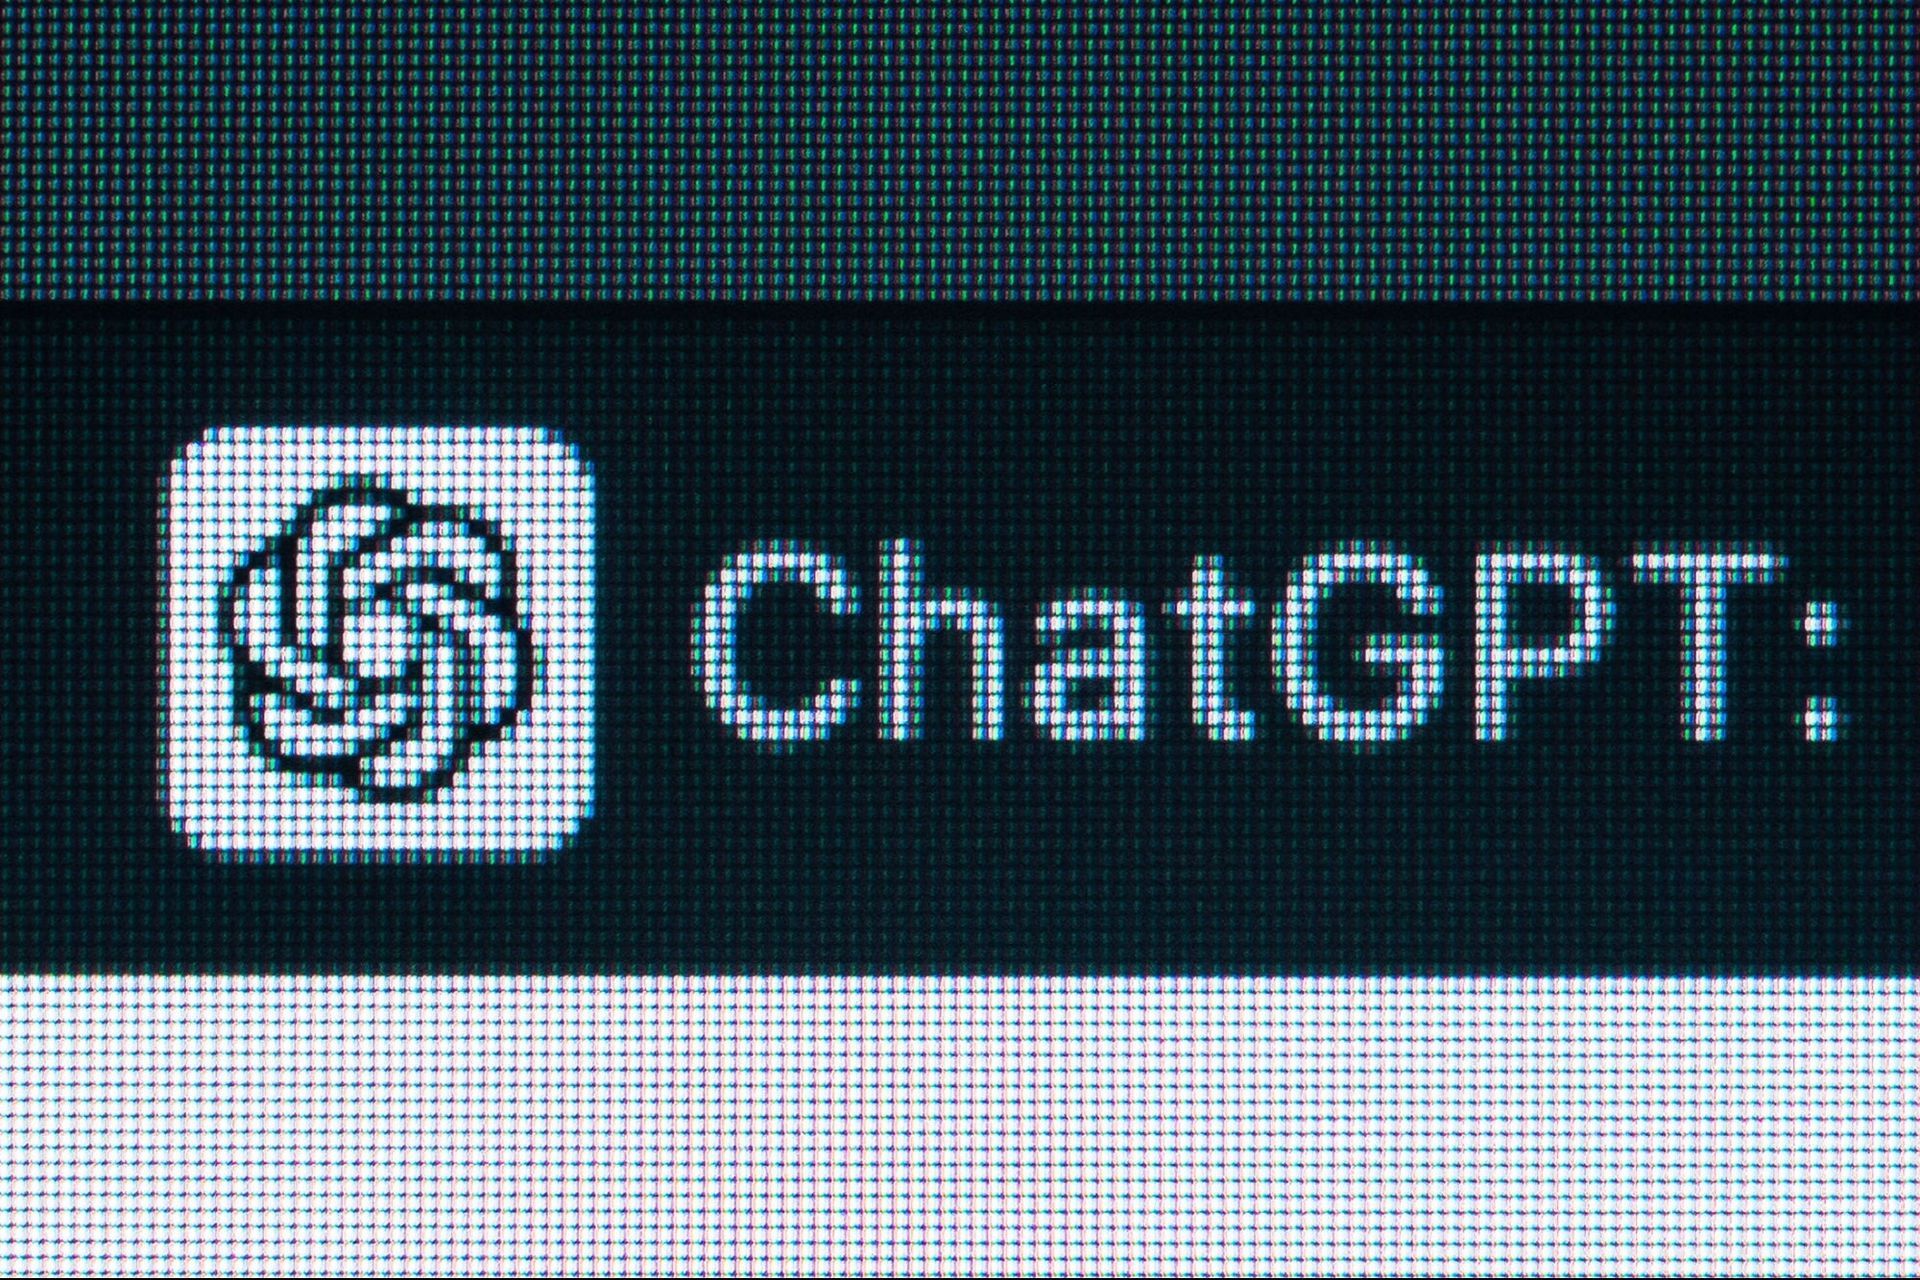 Стоит ли использовать ChatGPT Plus?